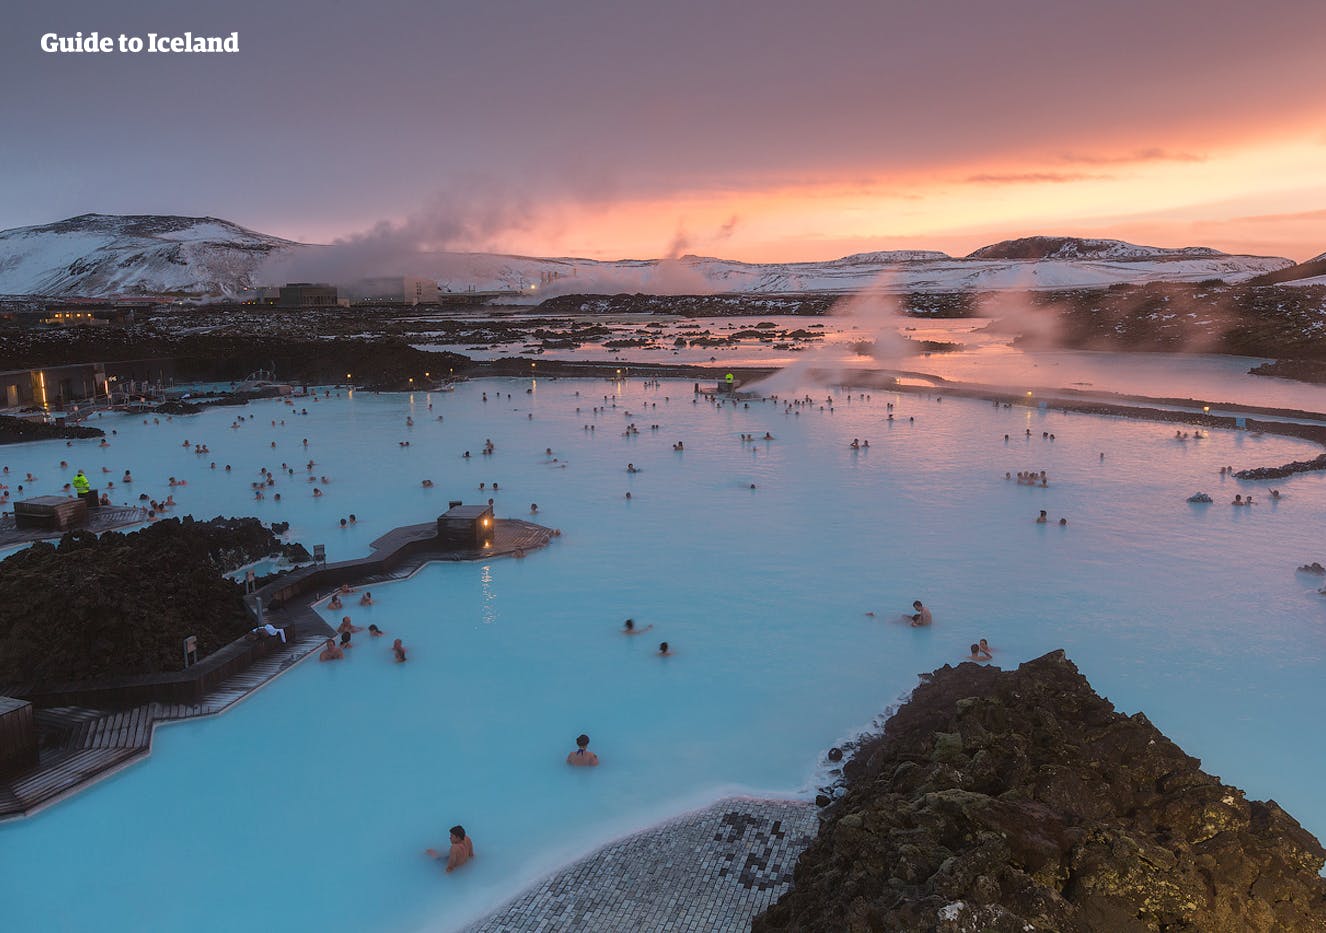 Comienza tu aventura en Islandia visitando Blue Lagoon, enclavada en un campo de lava negro azabache en la península de Reykjanes.